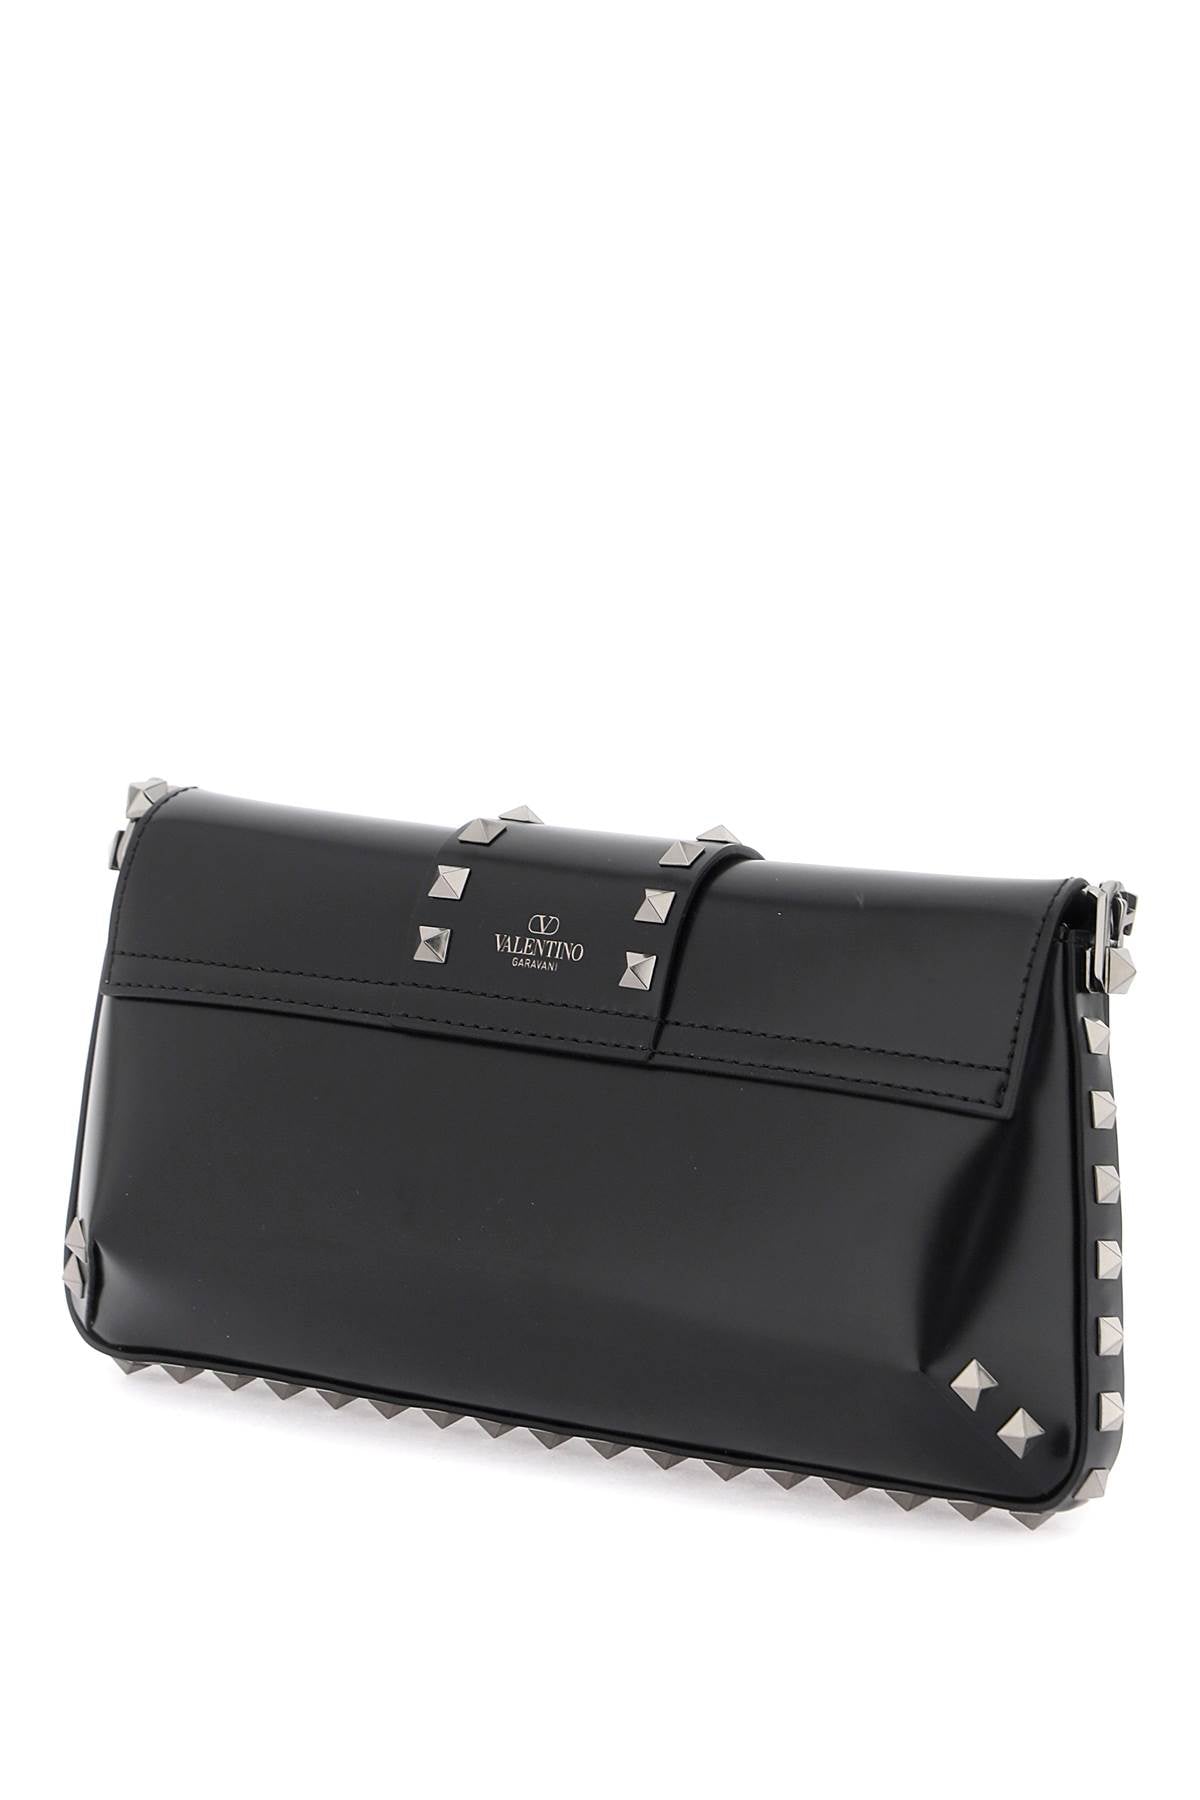 VALENTINO GARAVANI Rockstud Shoulder Handbag in Brushed Black Leather with Iconic Studs